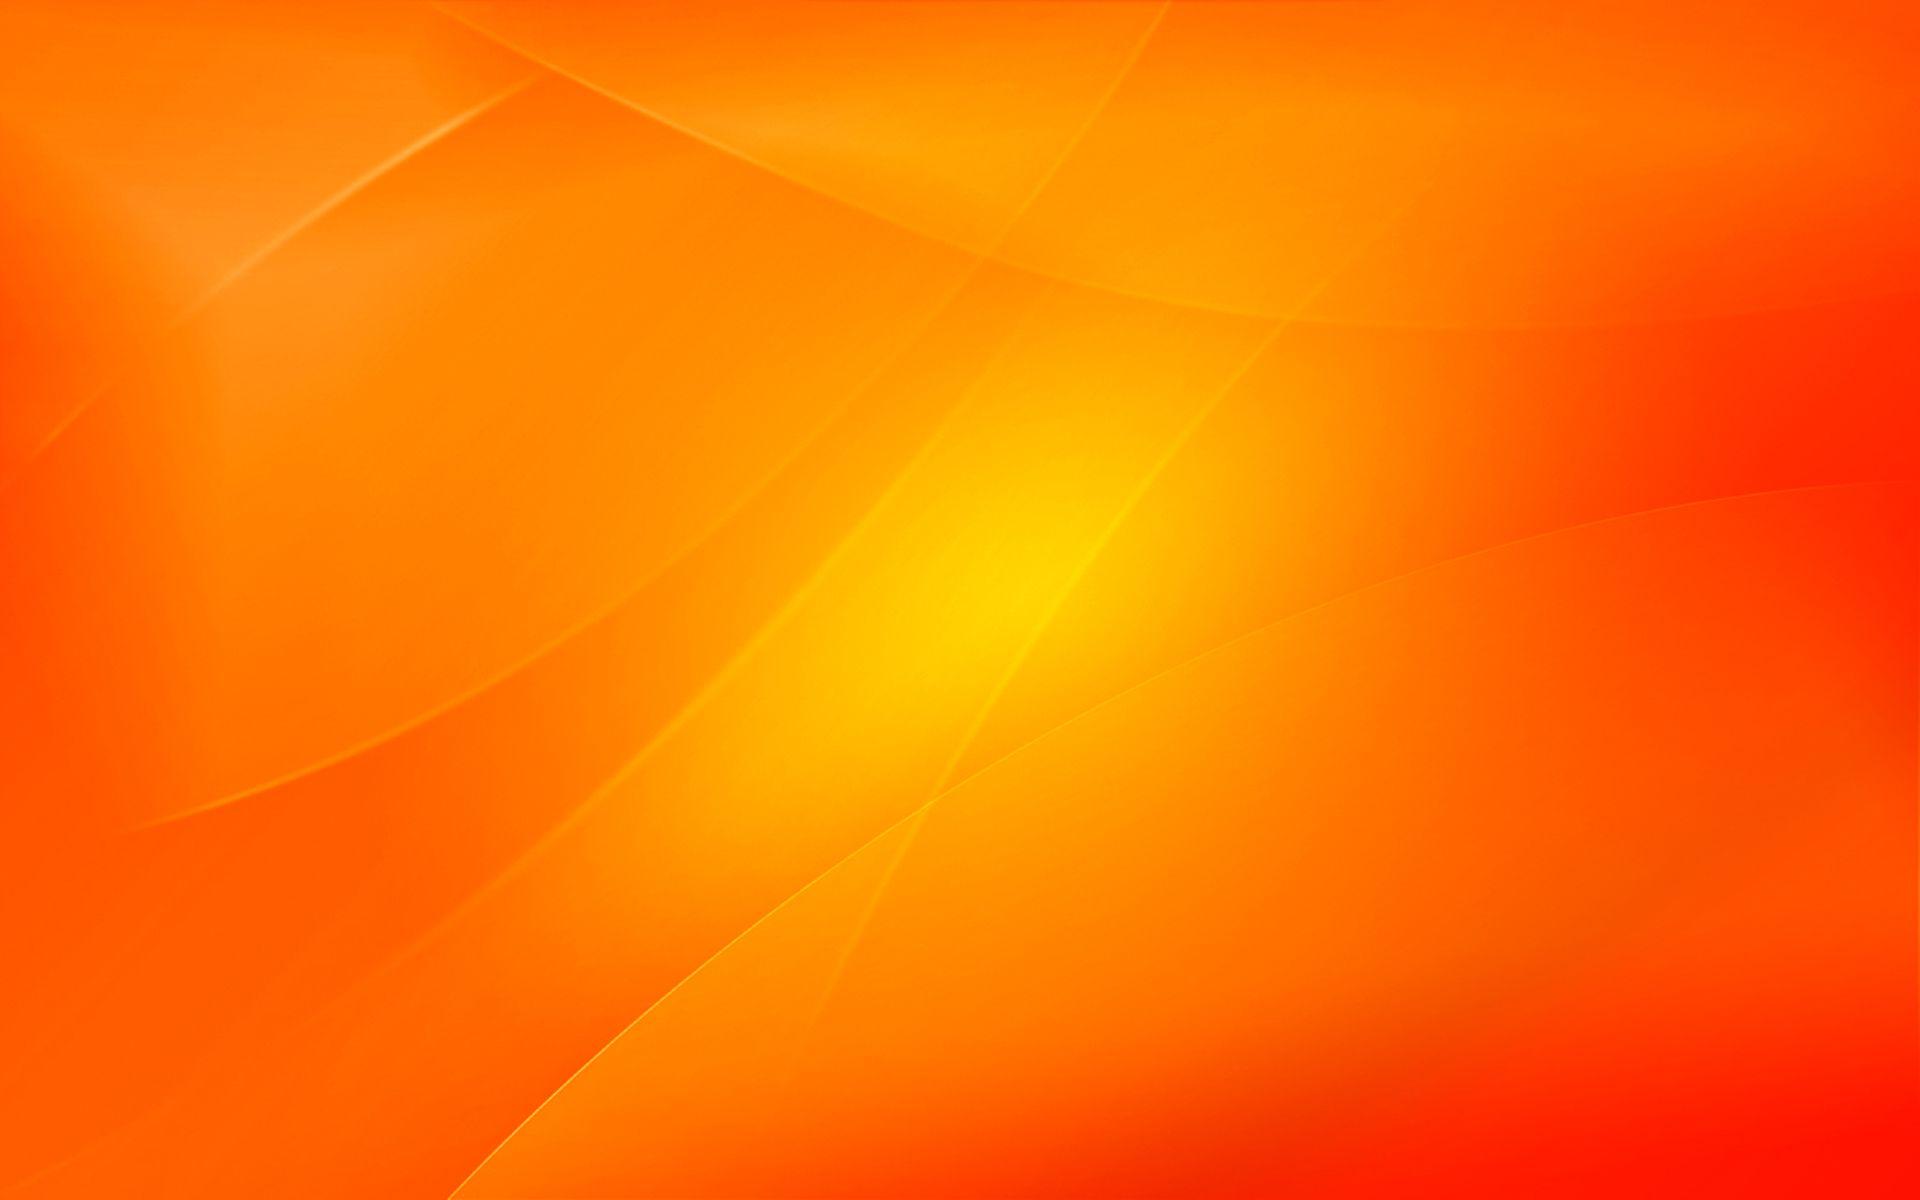  Orange Background  Images Wallpaper Cave